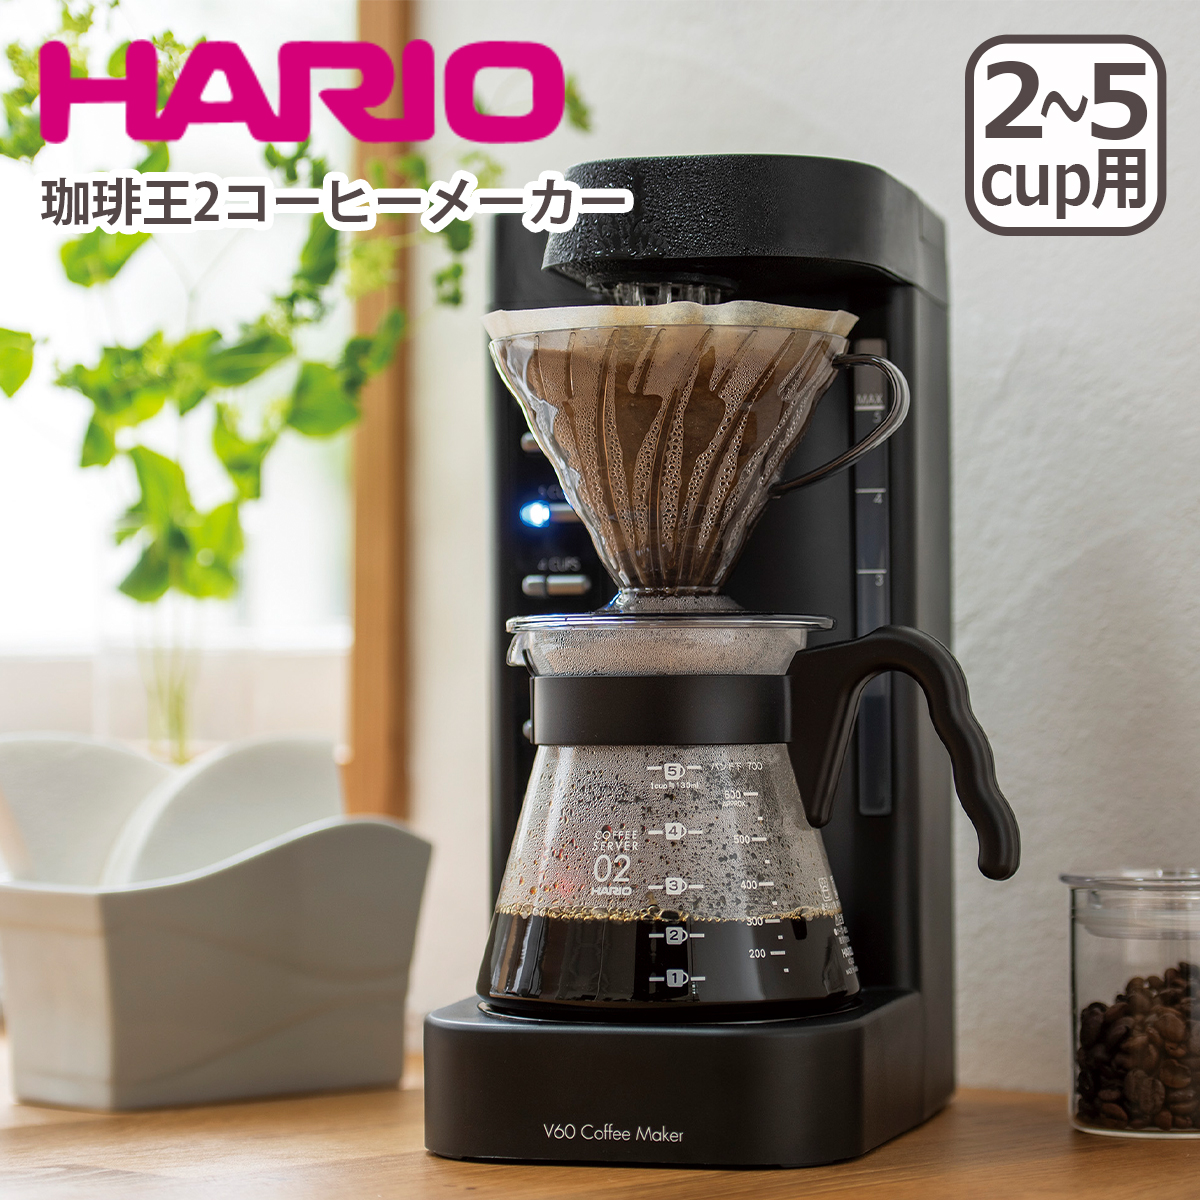 ハリオ V60 珈琲王2コーヒーメーカー 2-5杯 EVCM2-5TB V60円すい形ペーパードリップ式 HARIO